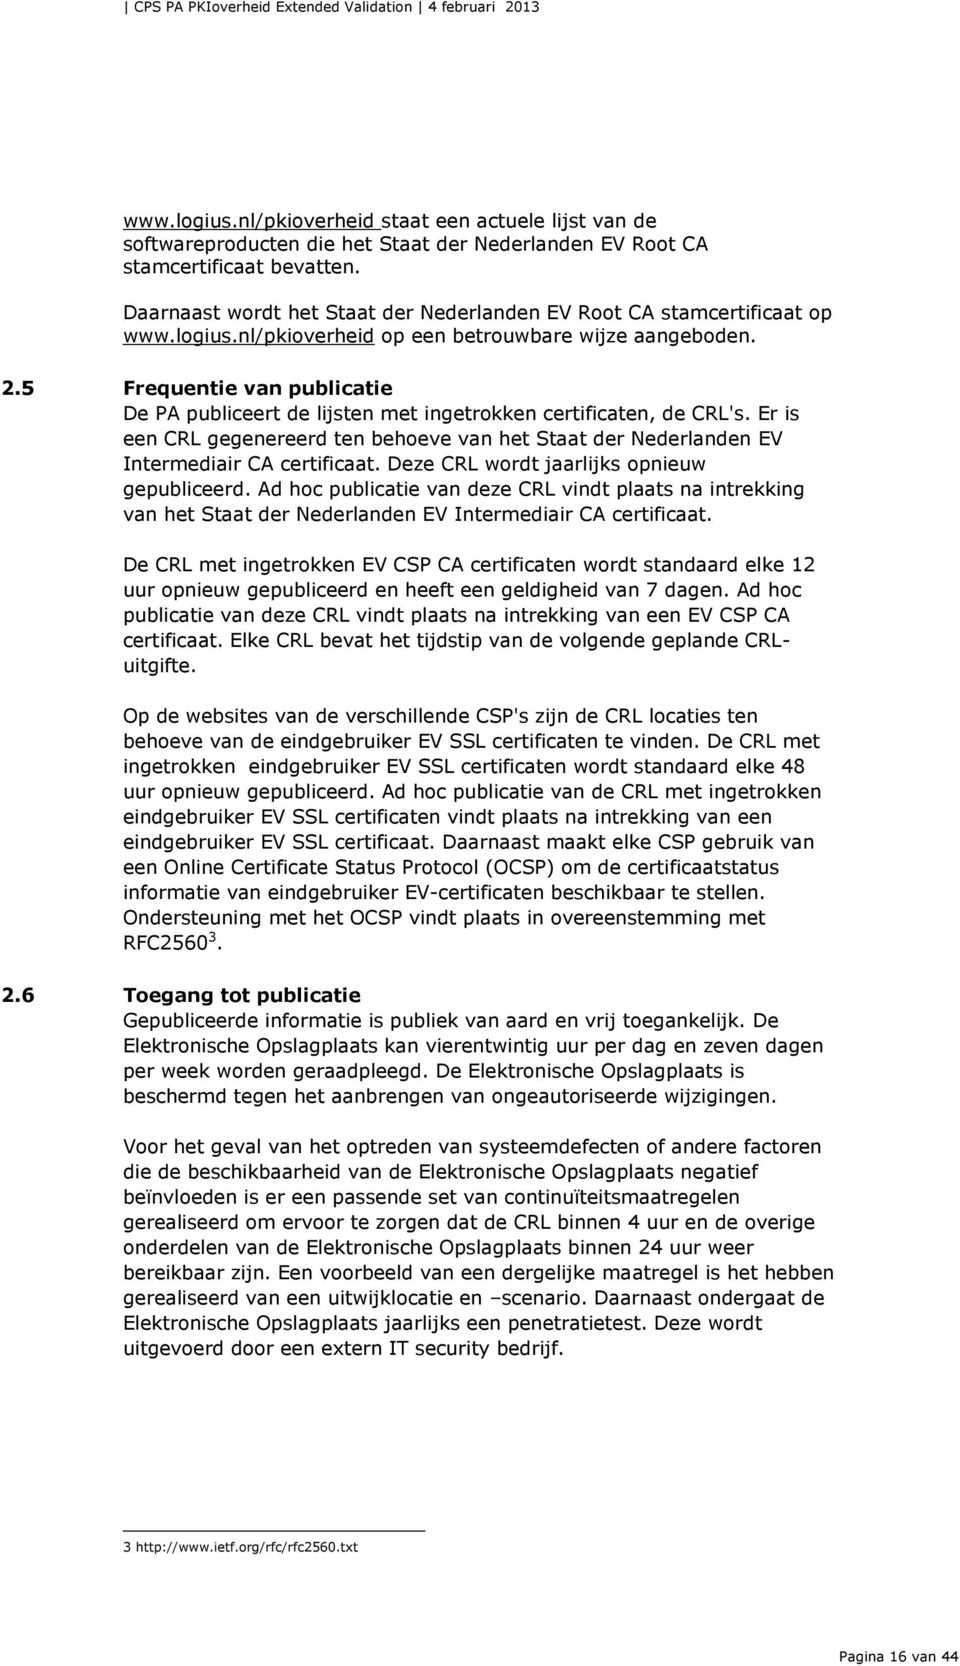 5 Frequentie van publicatie De PA publiceert de lijsten met ingetrokken certificaten, de CRL's. Er is een CRL gegenereerd ten behoeve van het Staat der Nederlanden EV Intermediair CA certificaat.